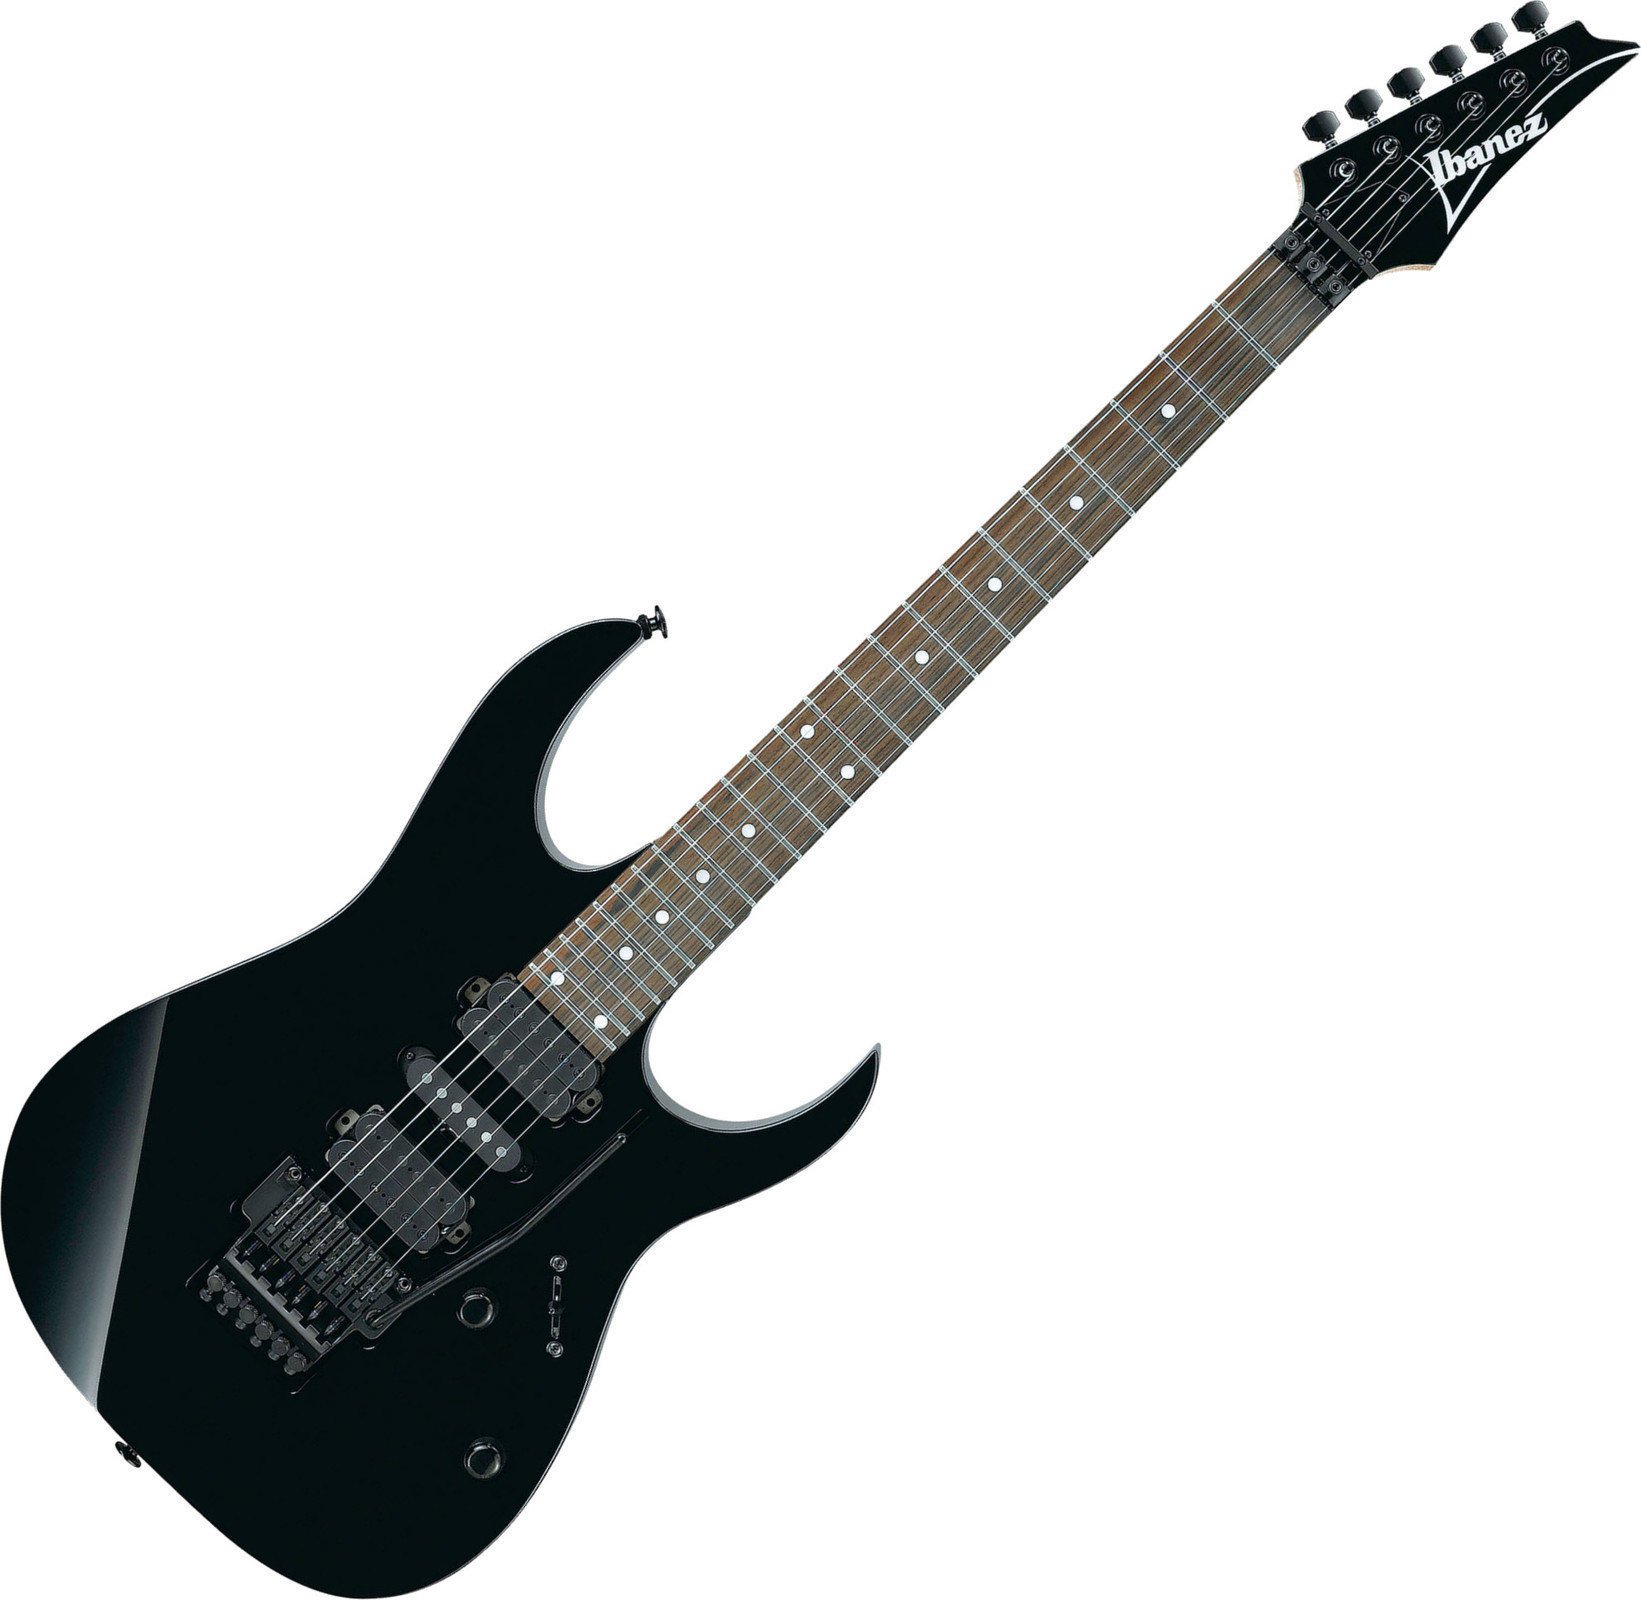 Electric guitar Ibanez RG570 Black